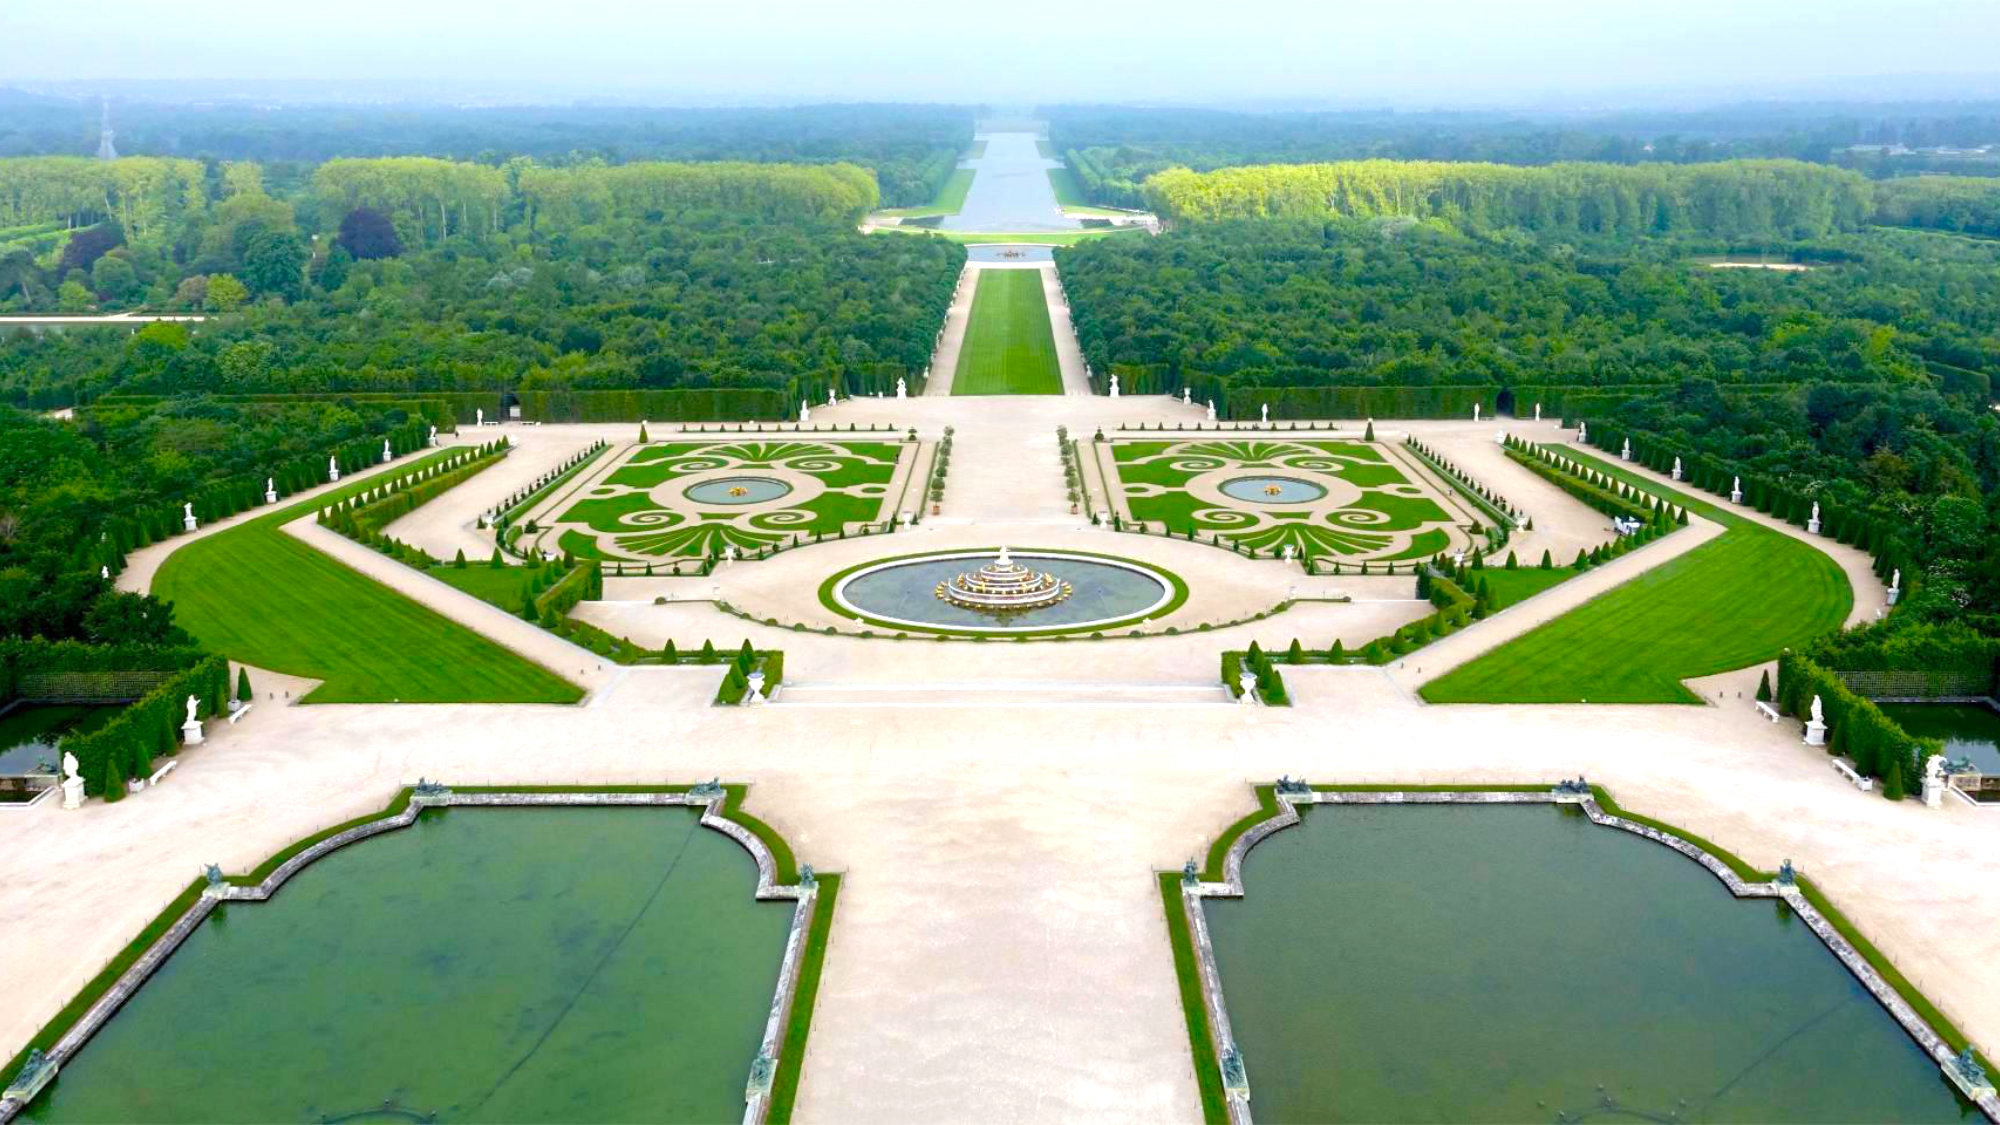 Pasear por los majestuosos jardines de Versalles es gratuito, y una experiencia sin igual